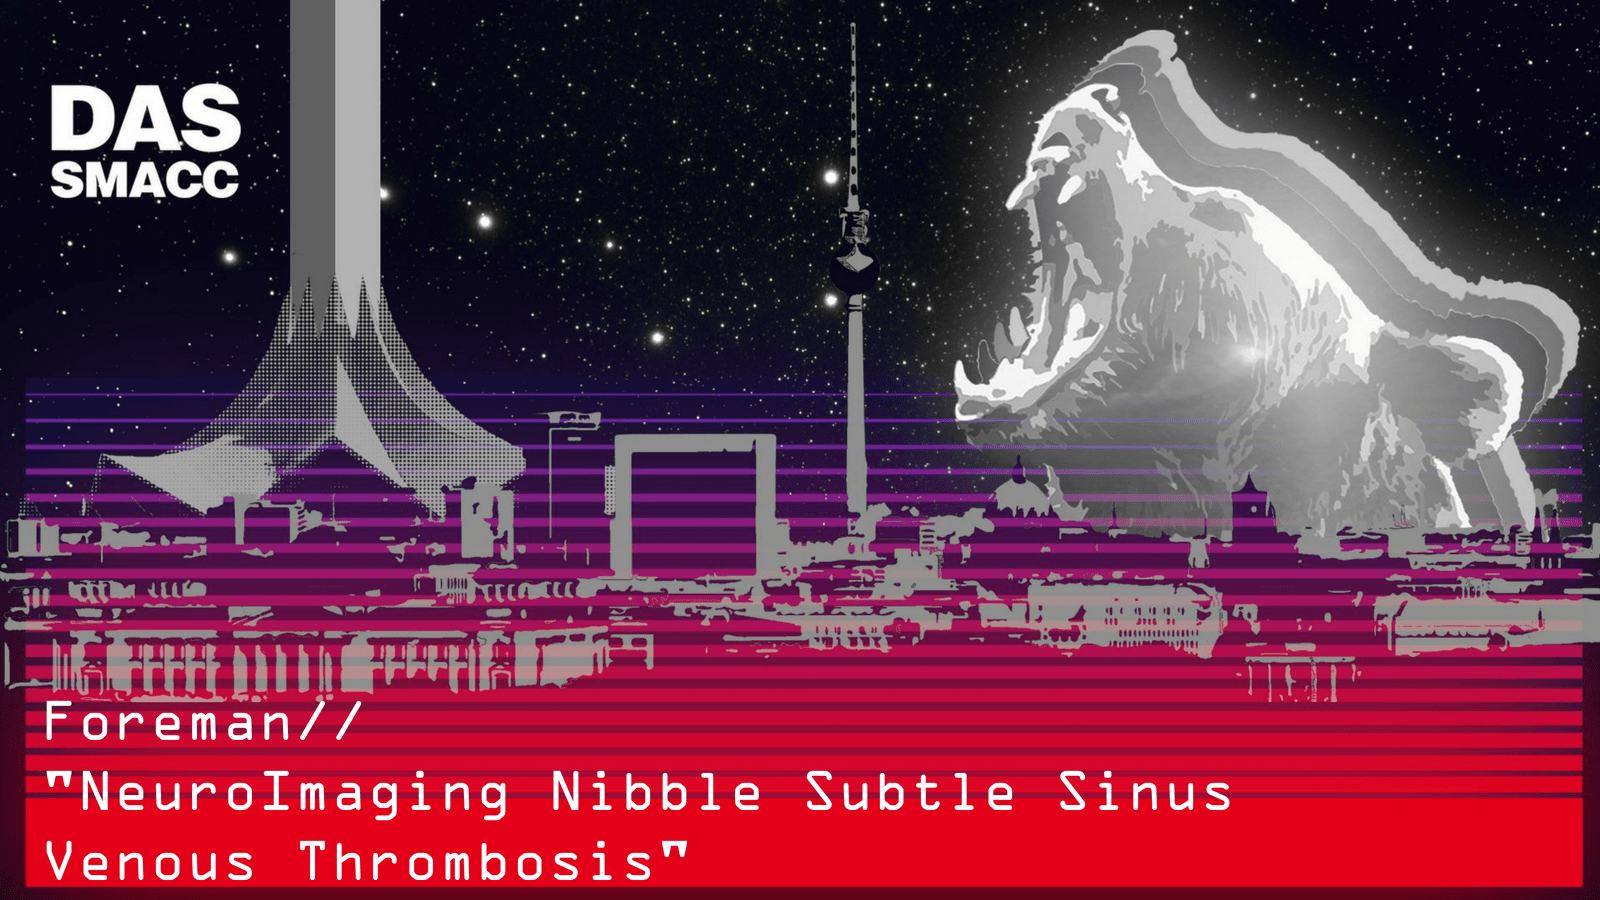 NeuroImaging Nibble Subtle Sinus Venous Thrombosis